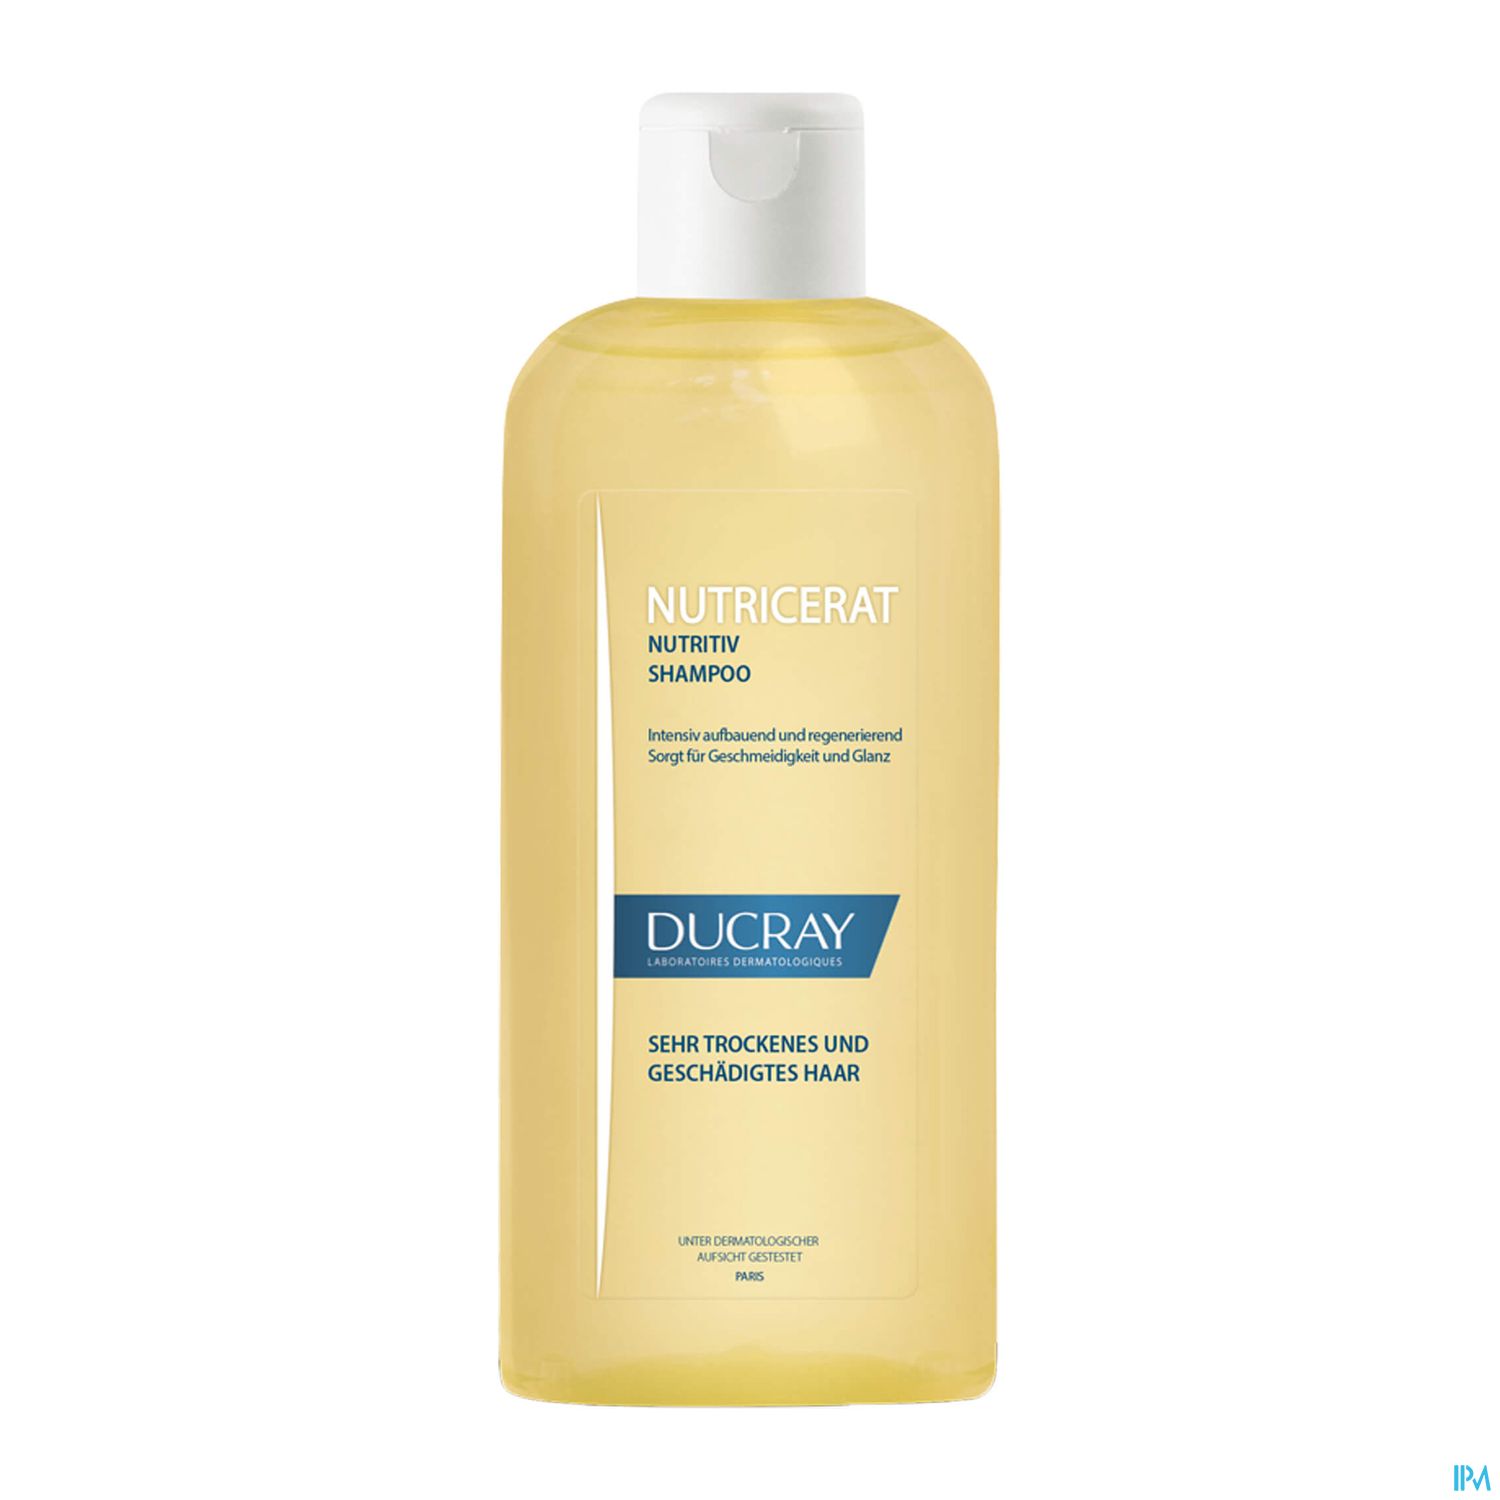 Ducray Nutricerat Intensiv Nährendes Shampoo 200ml